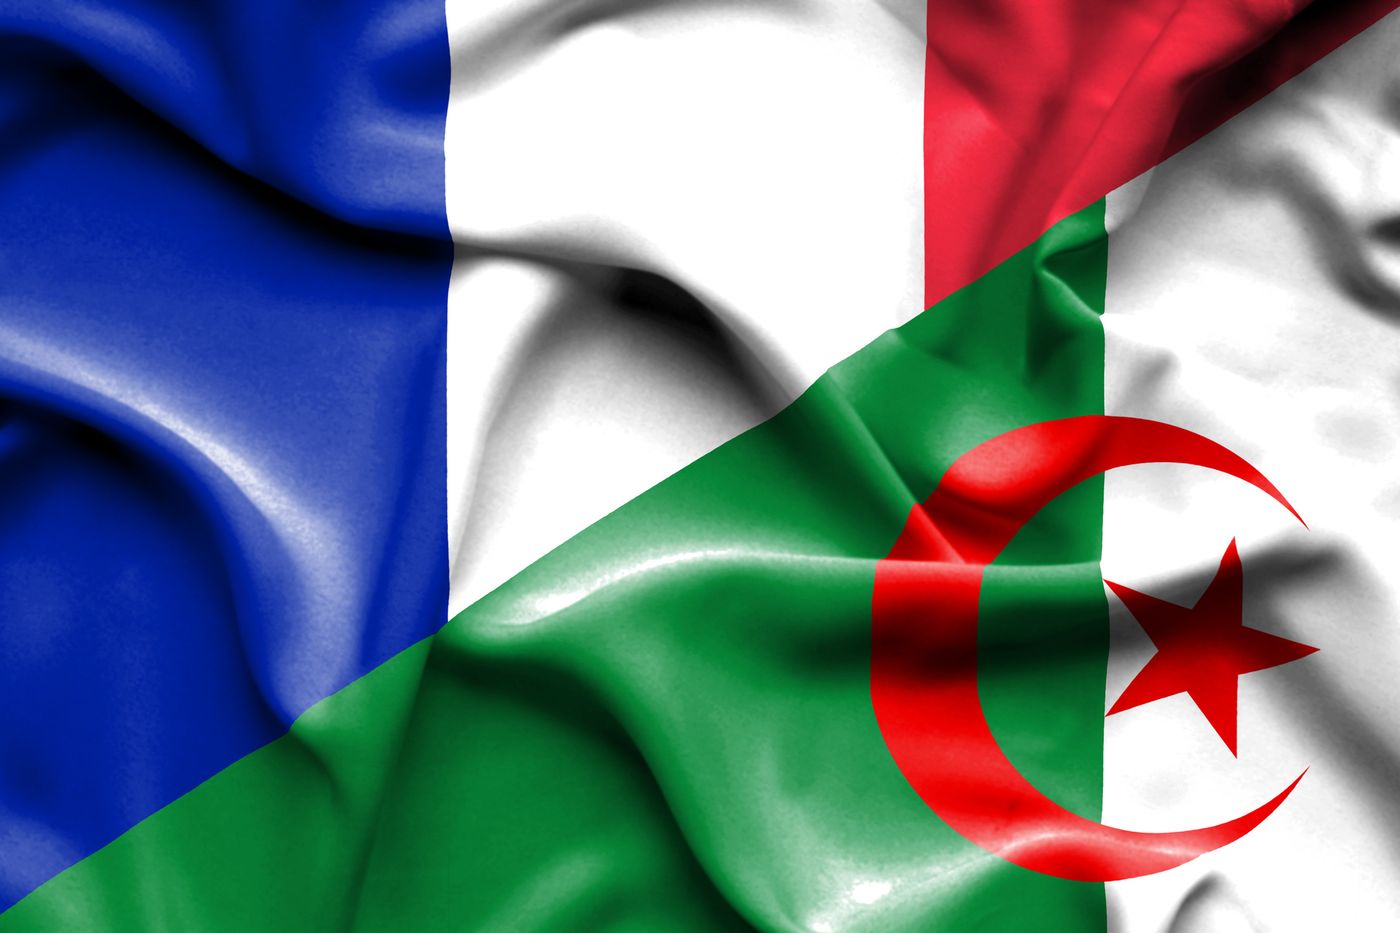 Des relations apaisées avec l’Algérie d’aujourd’hui? Impossible si elle ne change pas.